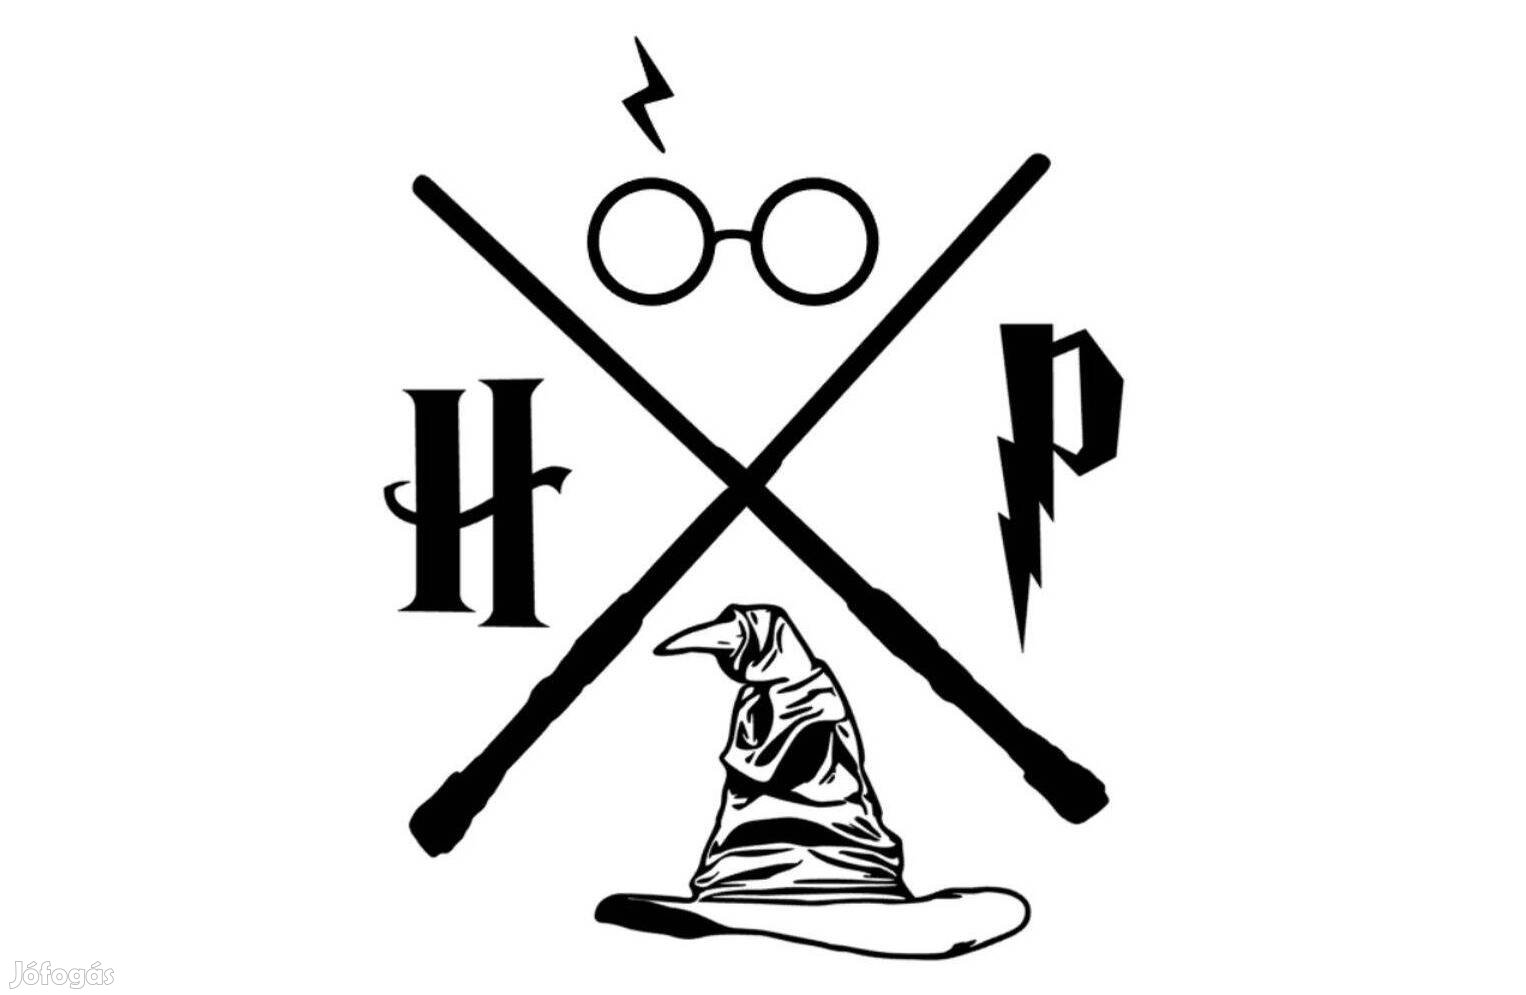 Harry Potter idézetes falmatrica, fali dekoráció - választható színben